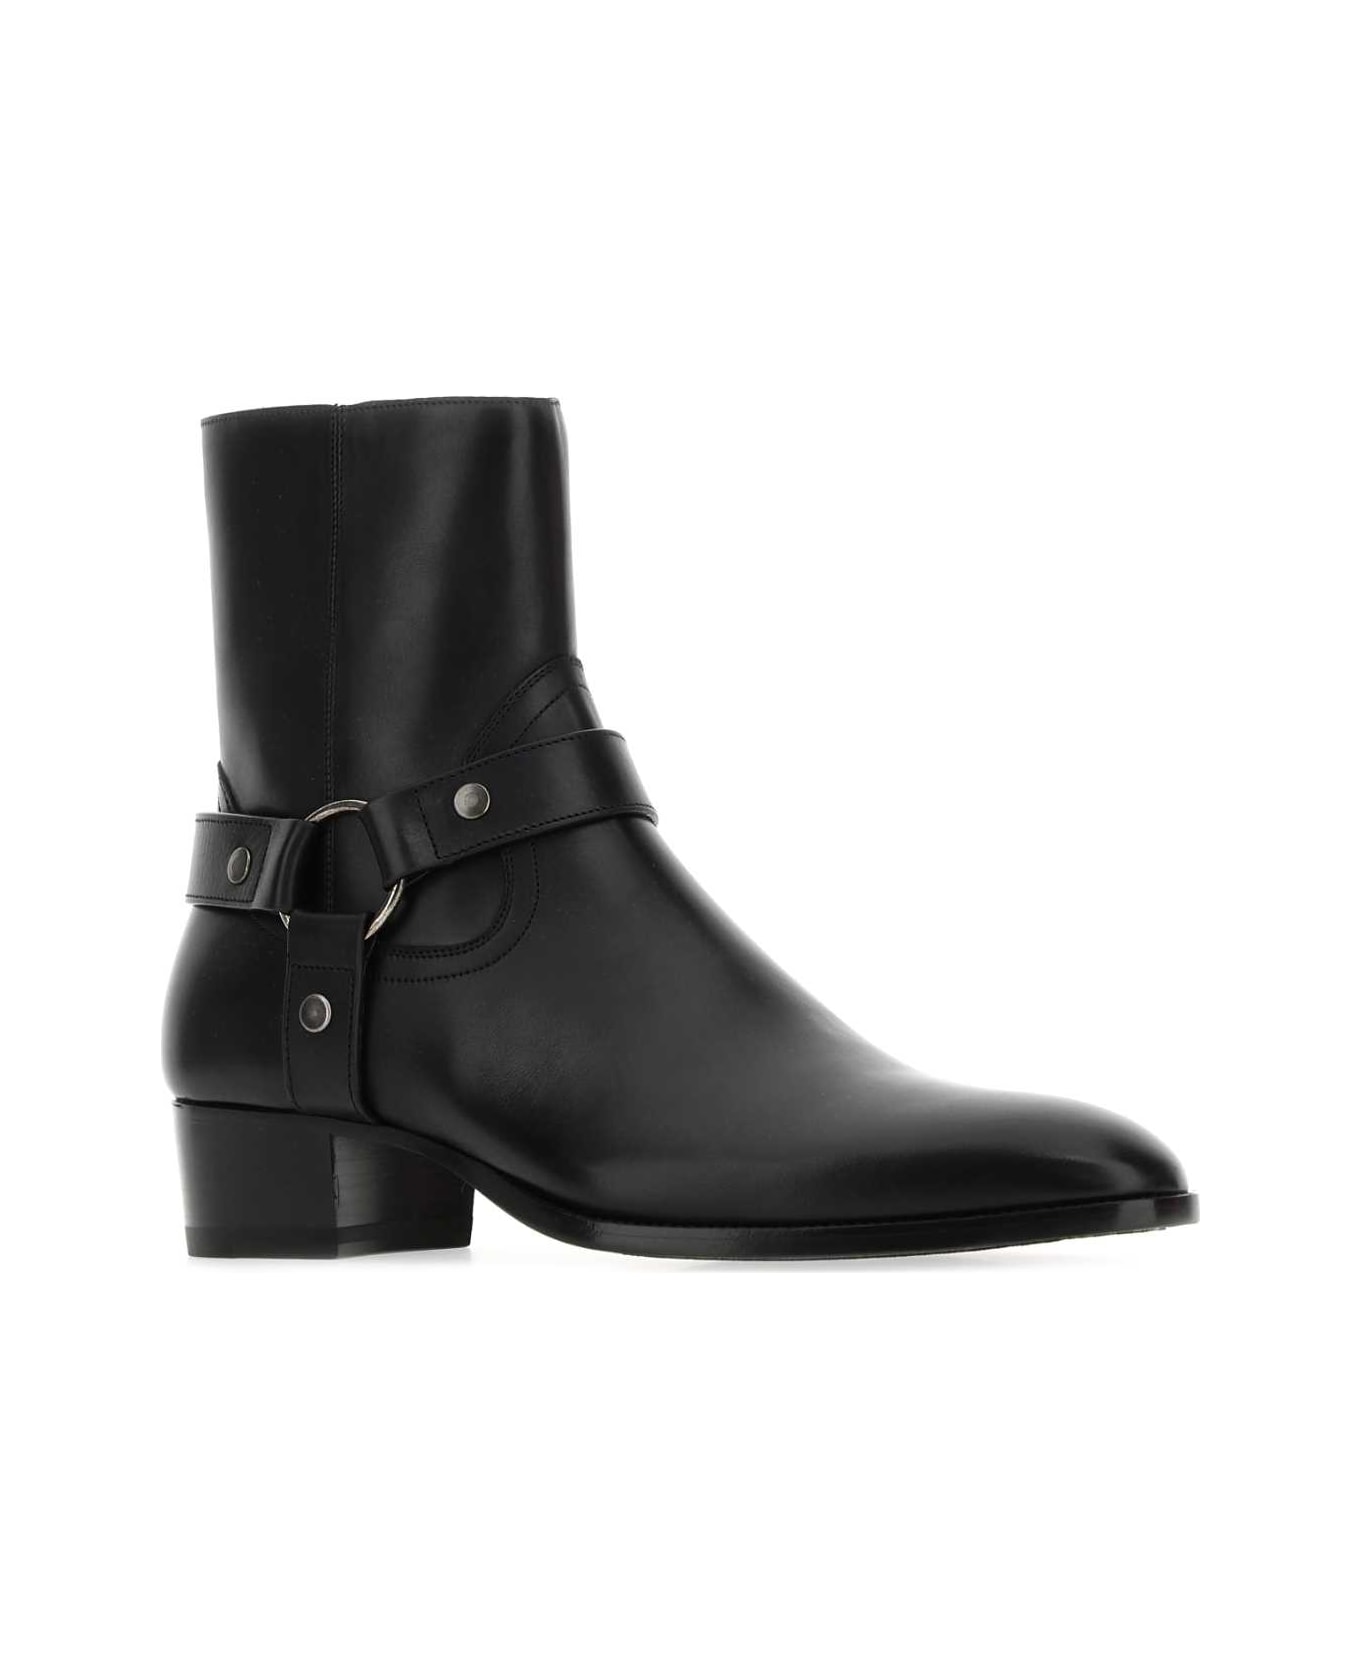 Saint Laurent Black Leather Ankle Boots - 1000